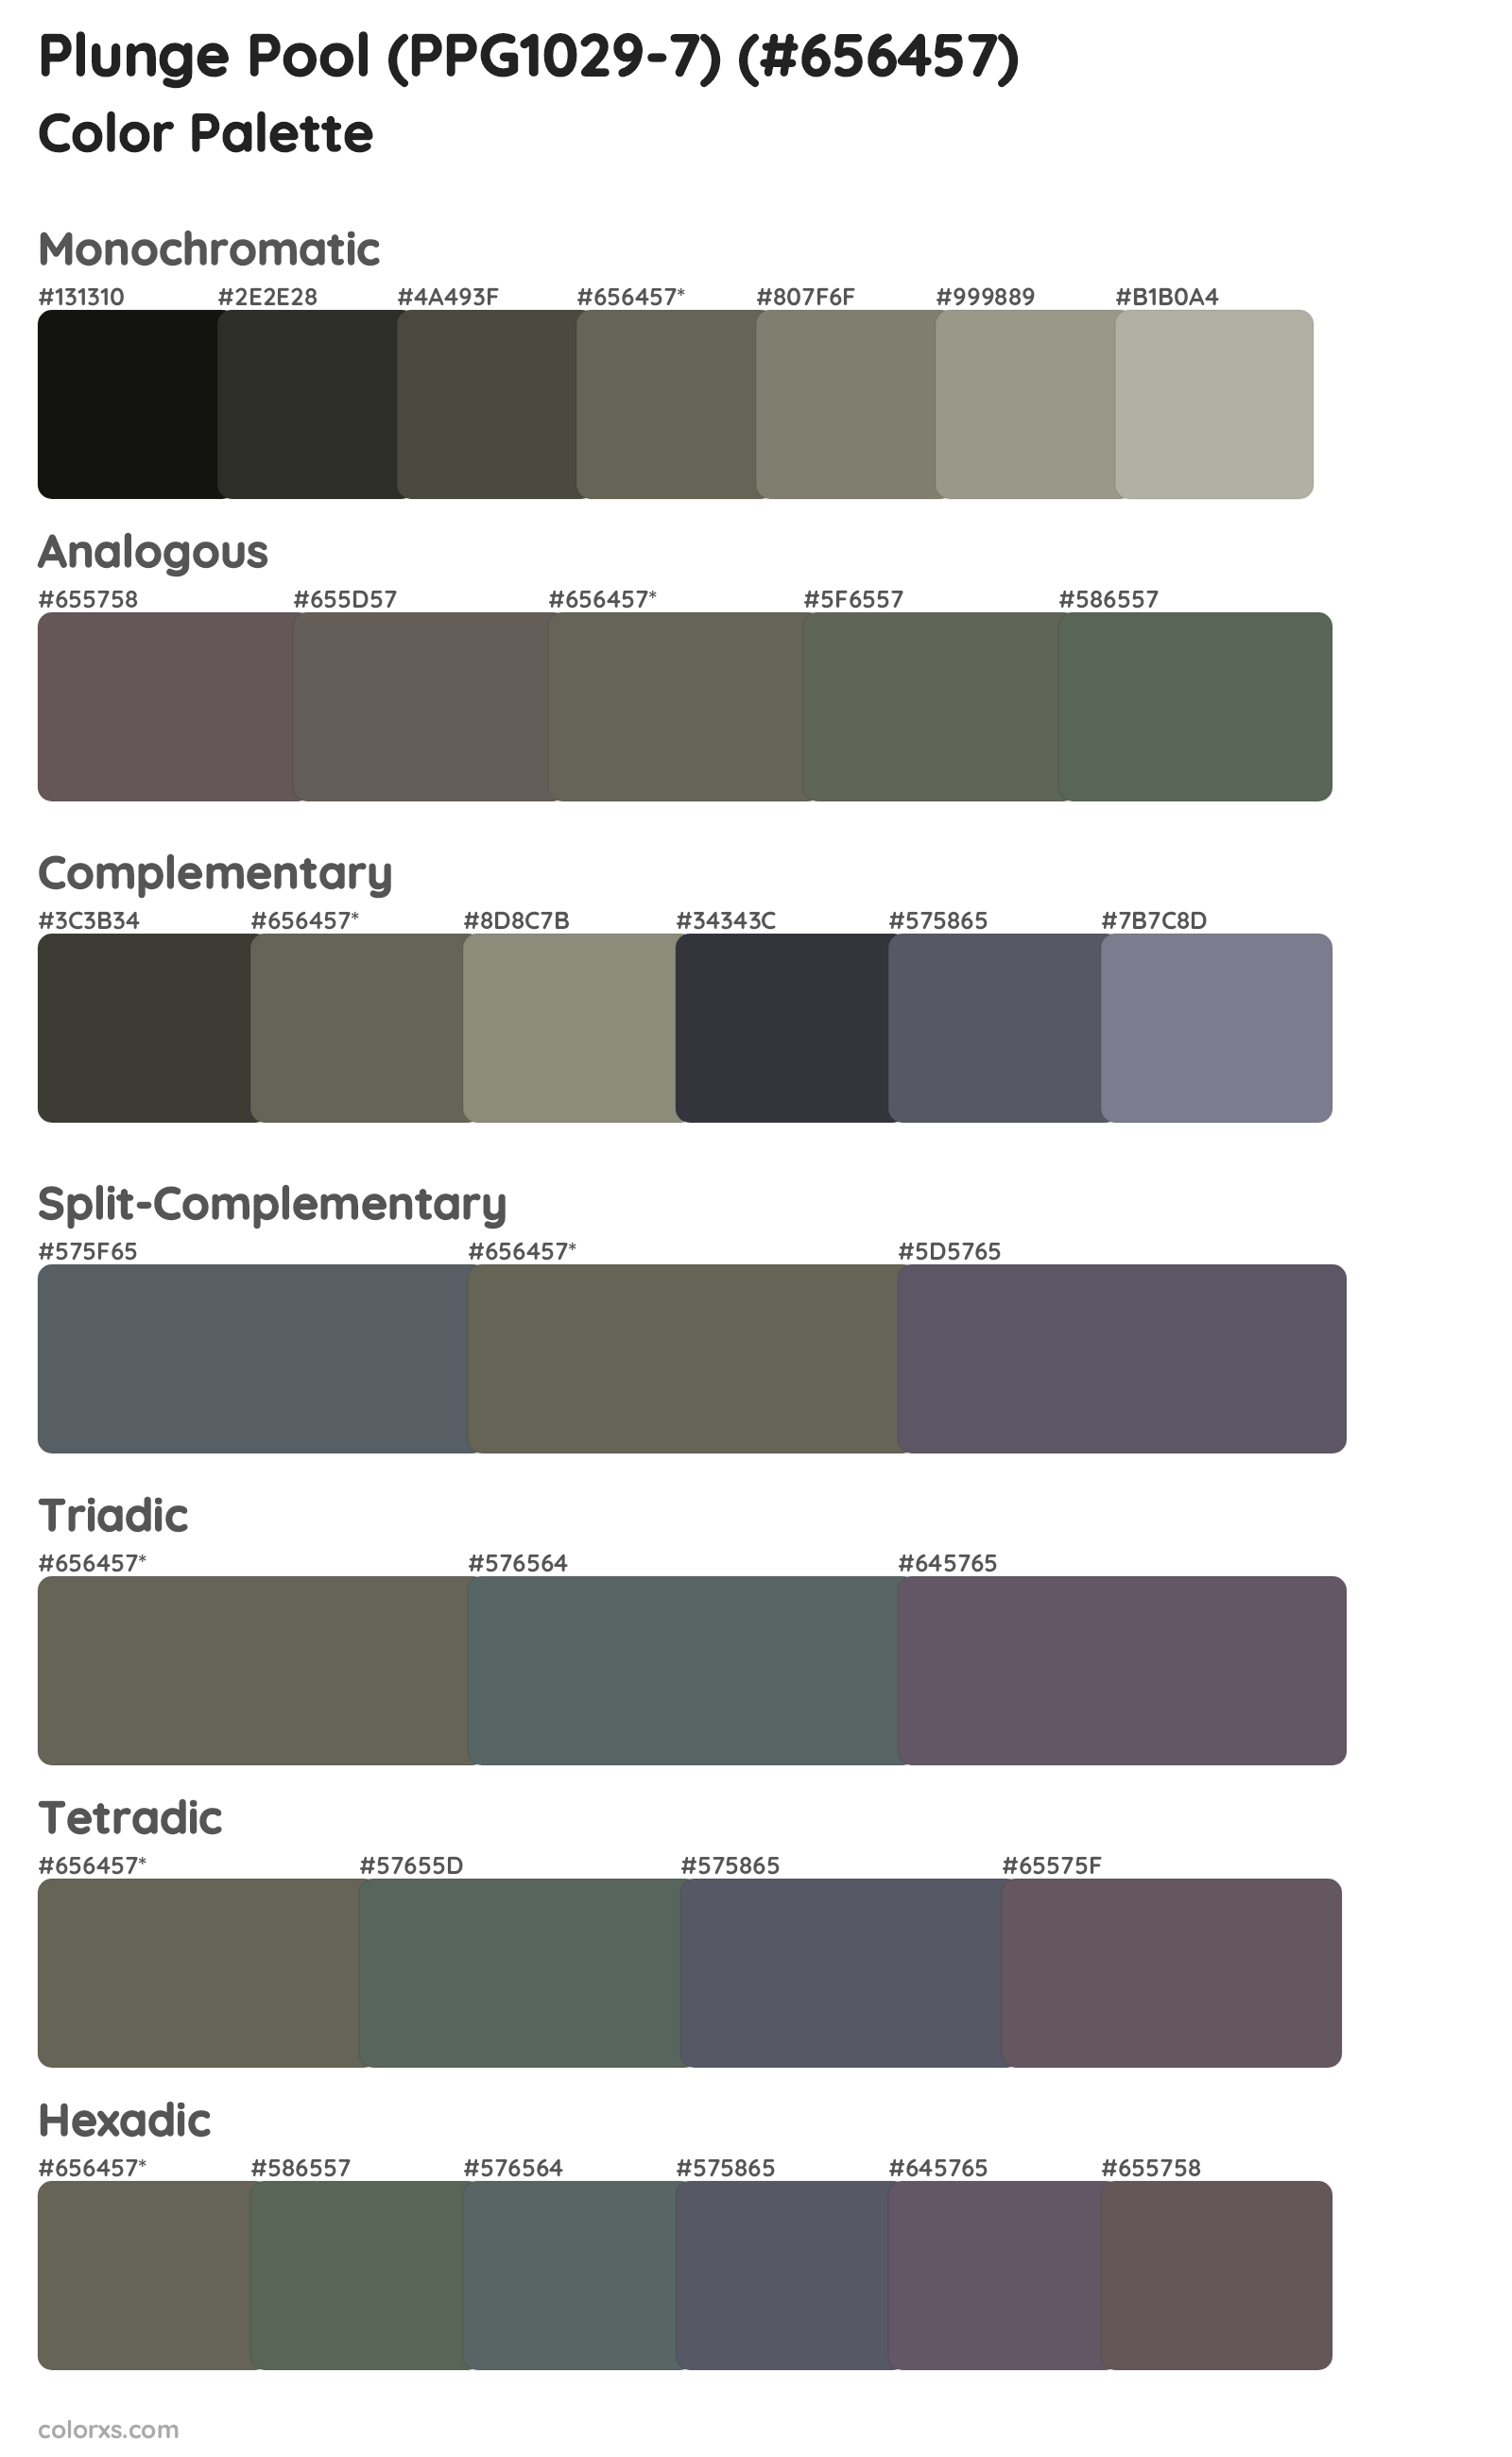 Plunge Pool (PPG1029-7) Color Scheme Palettes